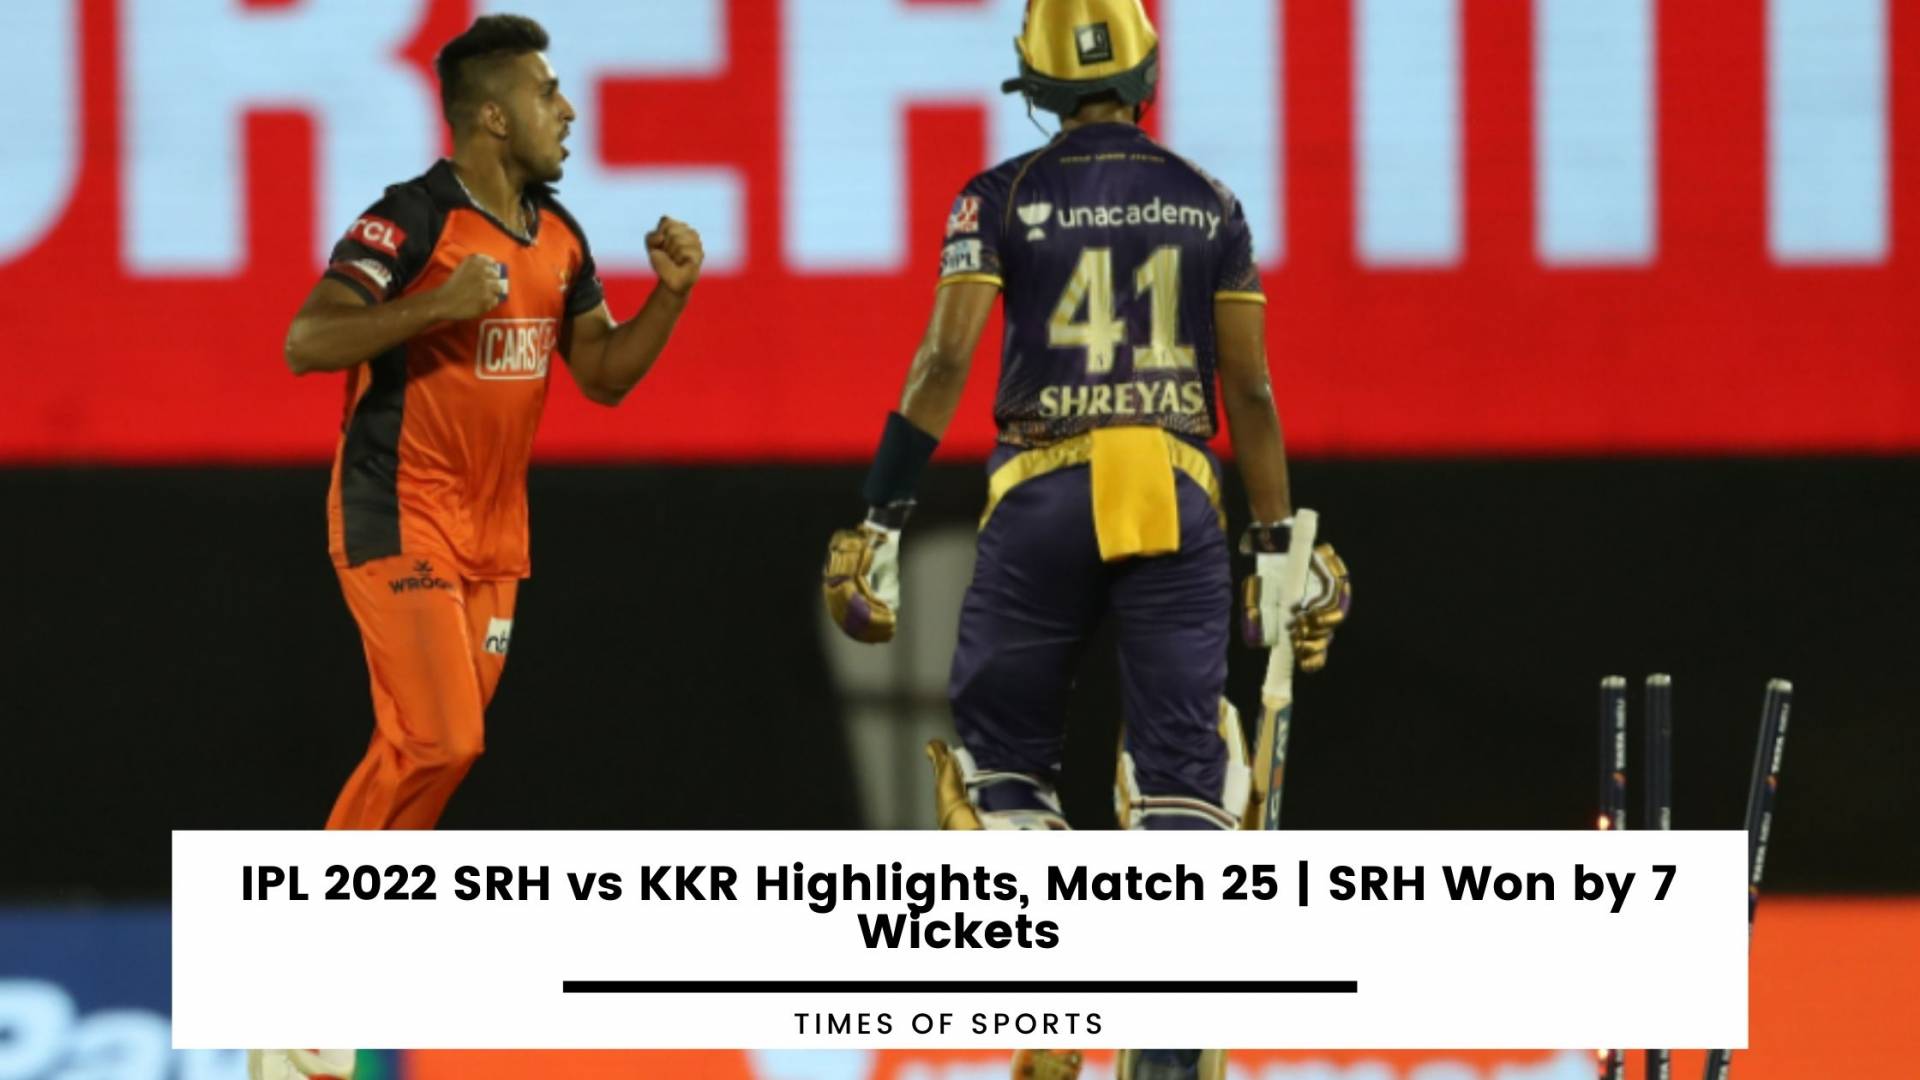 IPL 2022 SRH vs KKR Highlights, Match 25 SRH Won by 7 Wickets